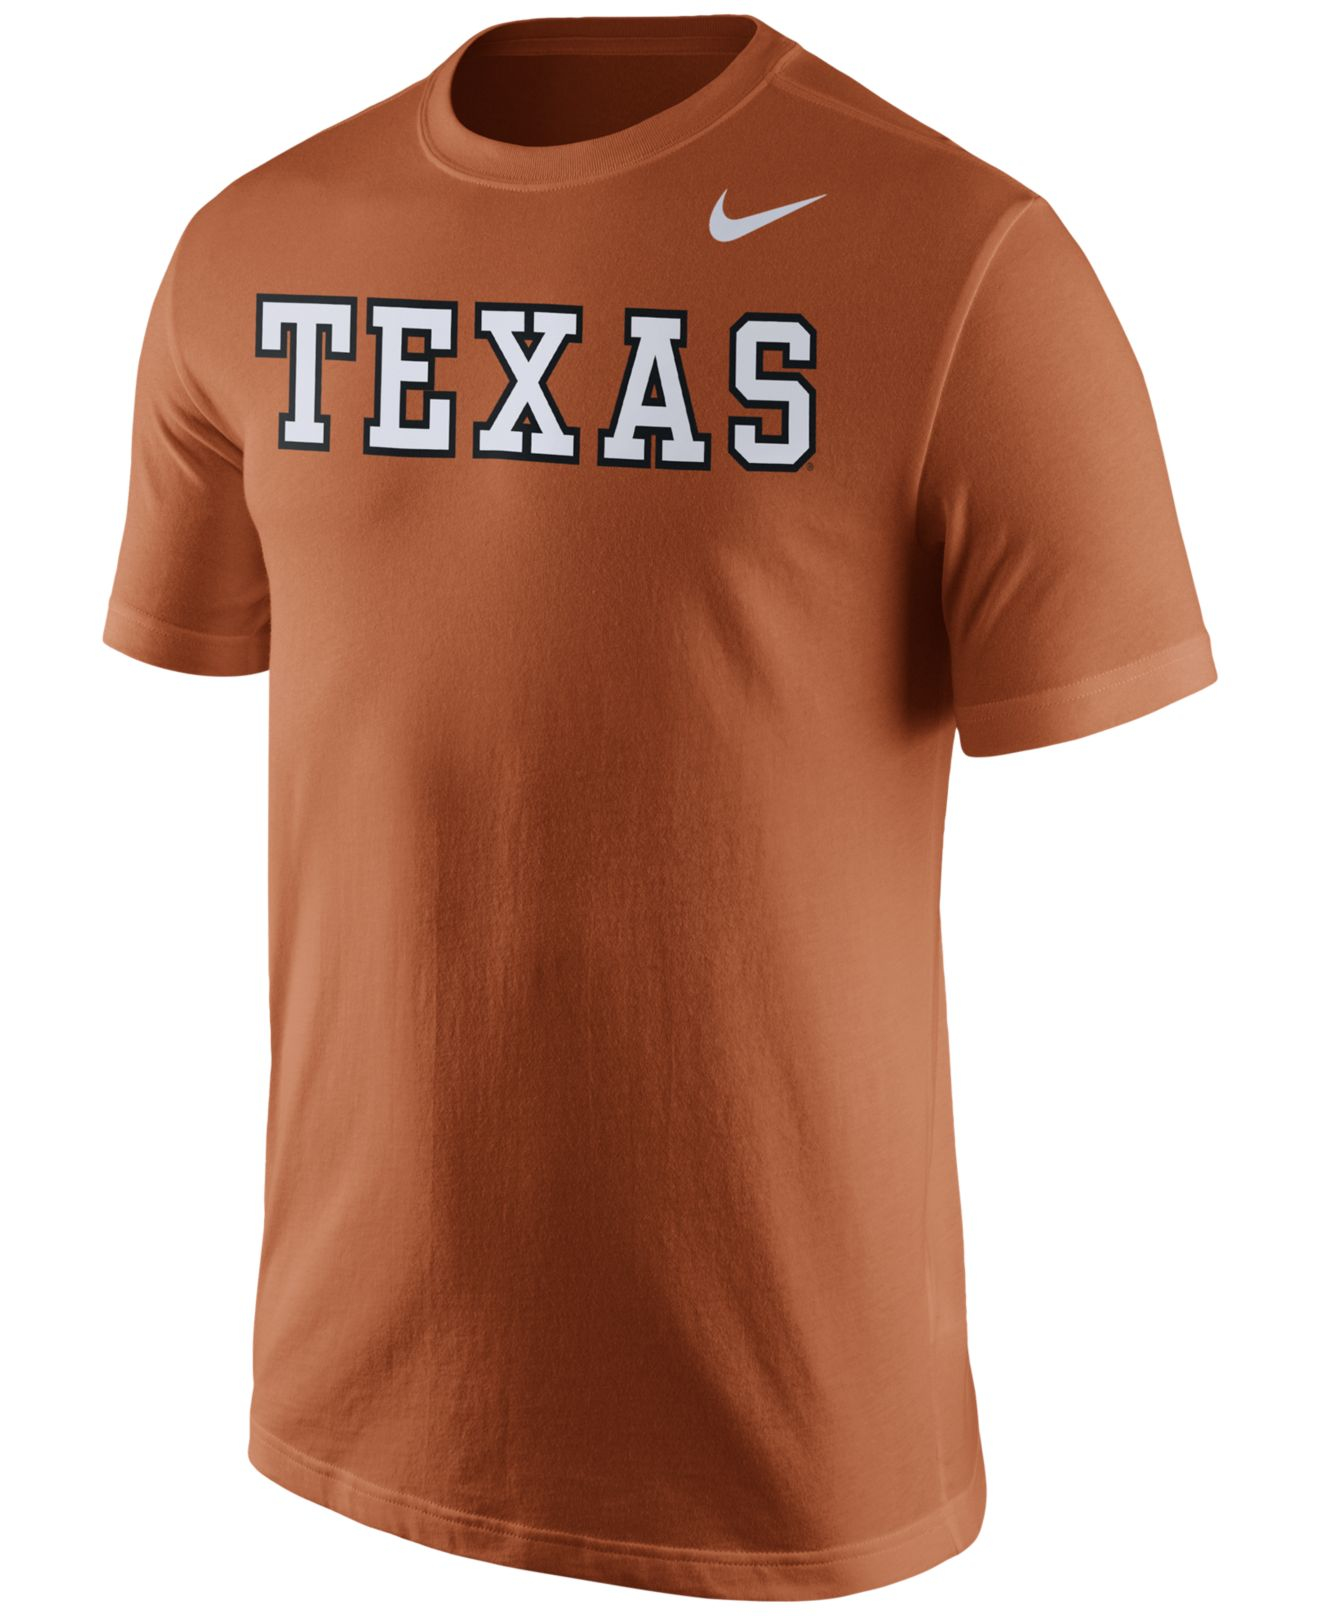 Lyst - Nike Men's Texas Longhorns Wordmark T-shirt in Orange for Men